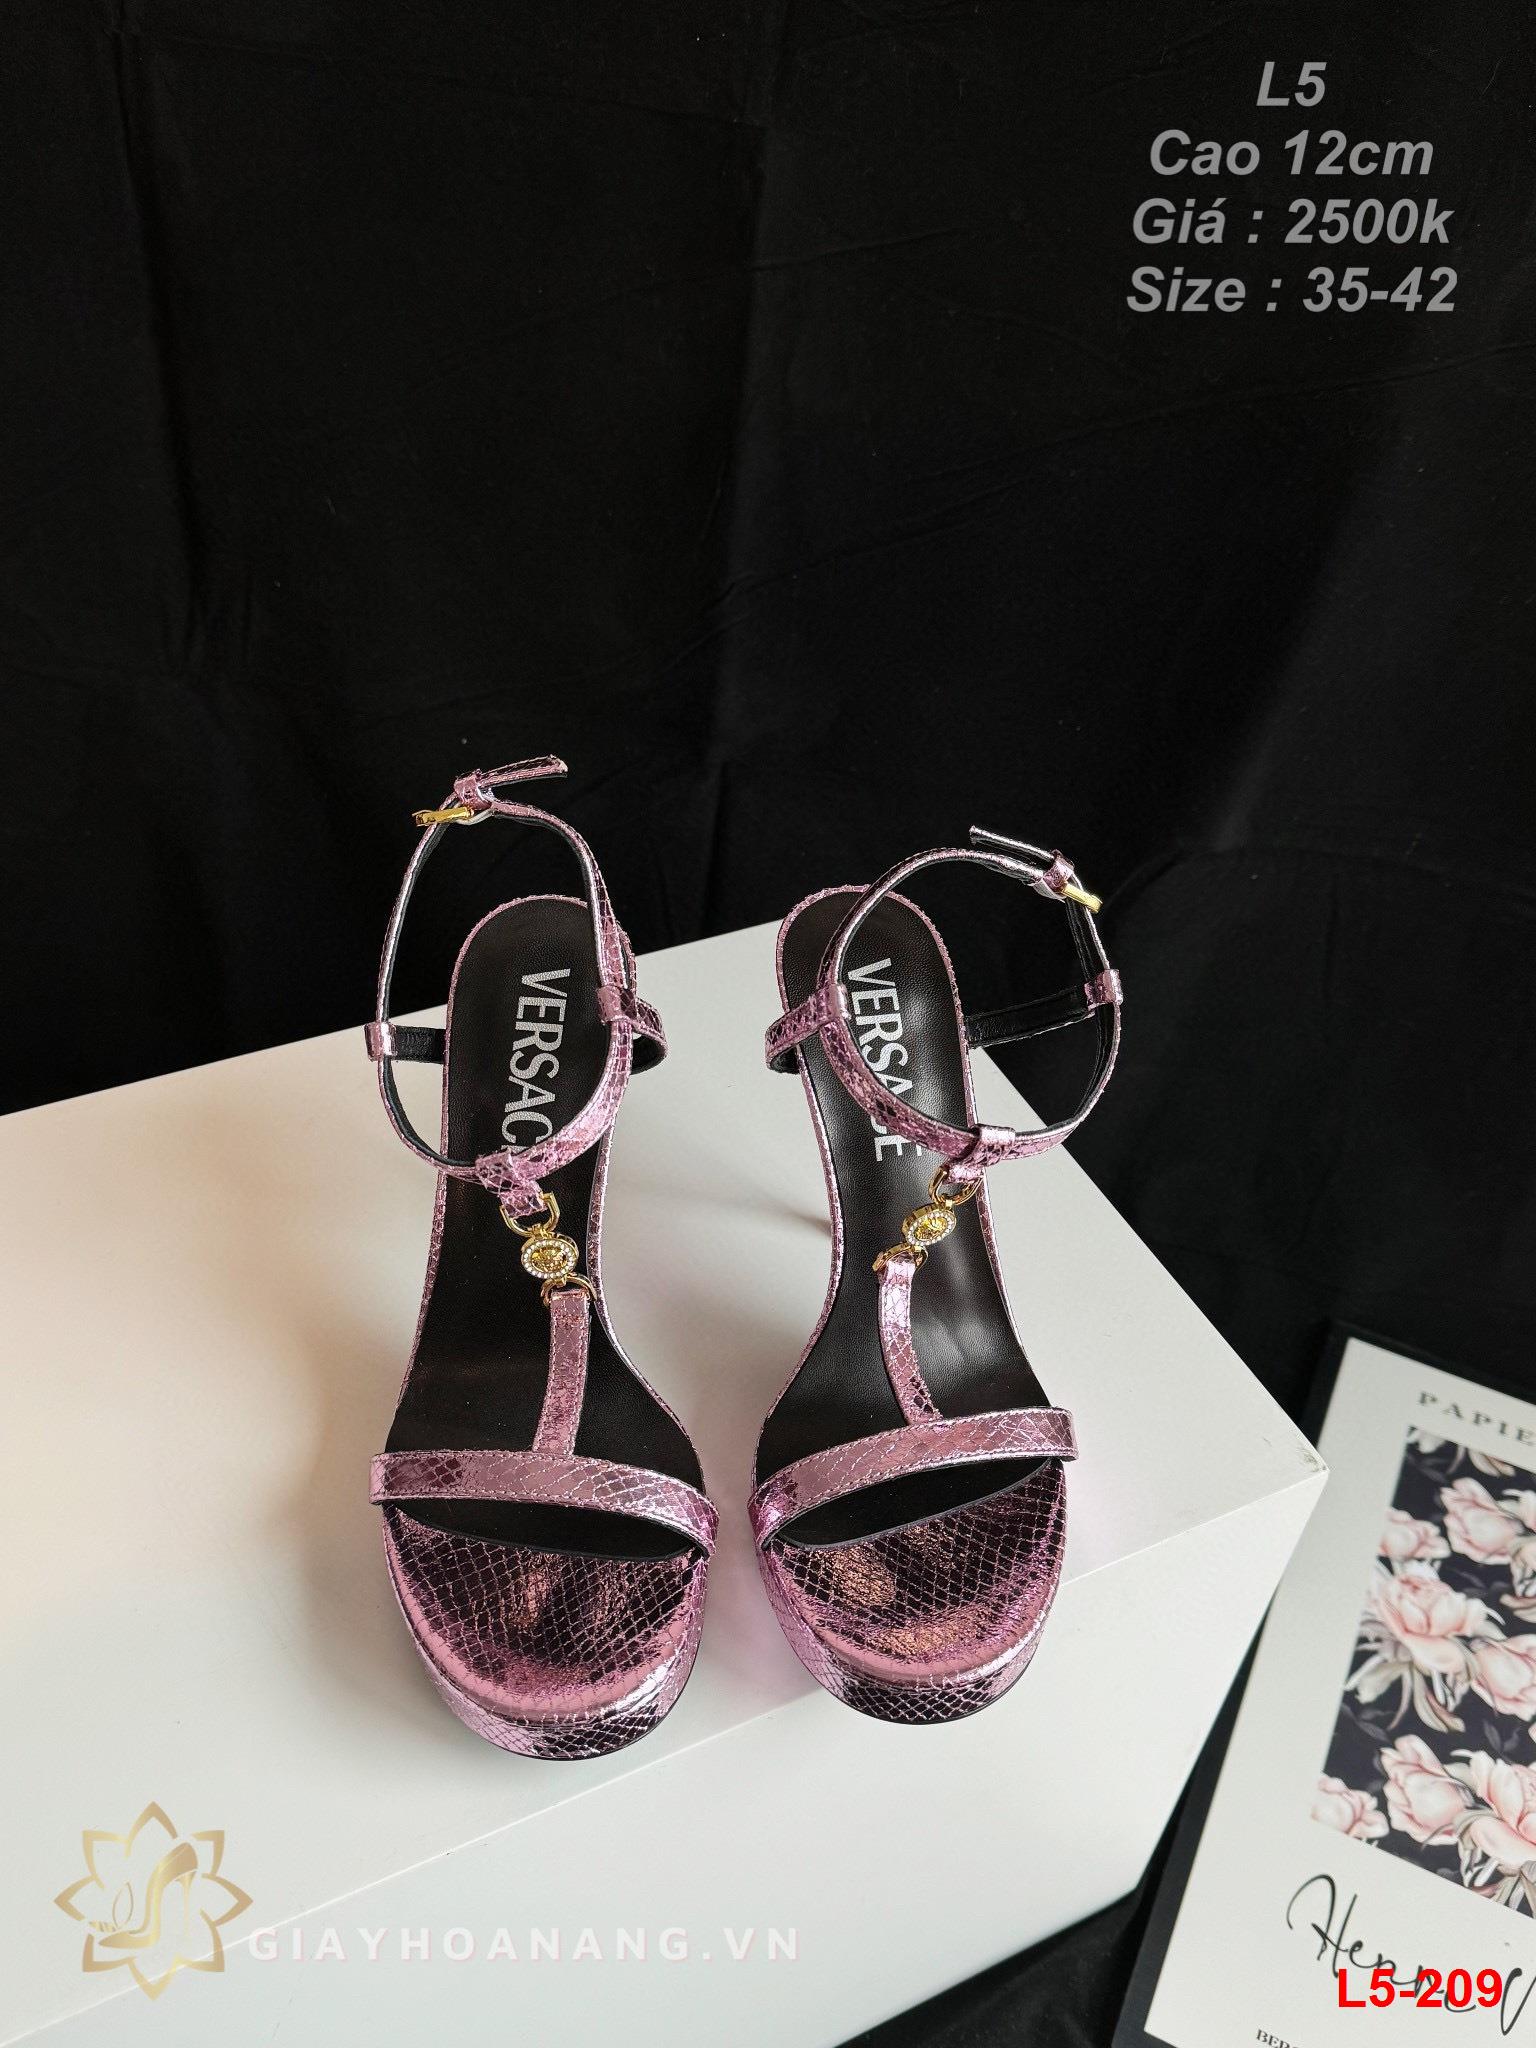 L5-209 Versace sandal cao 12cm siêu cấp